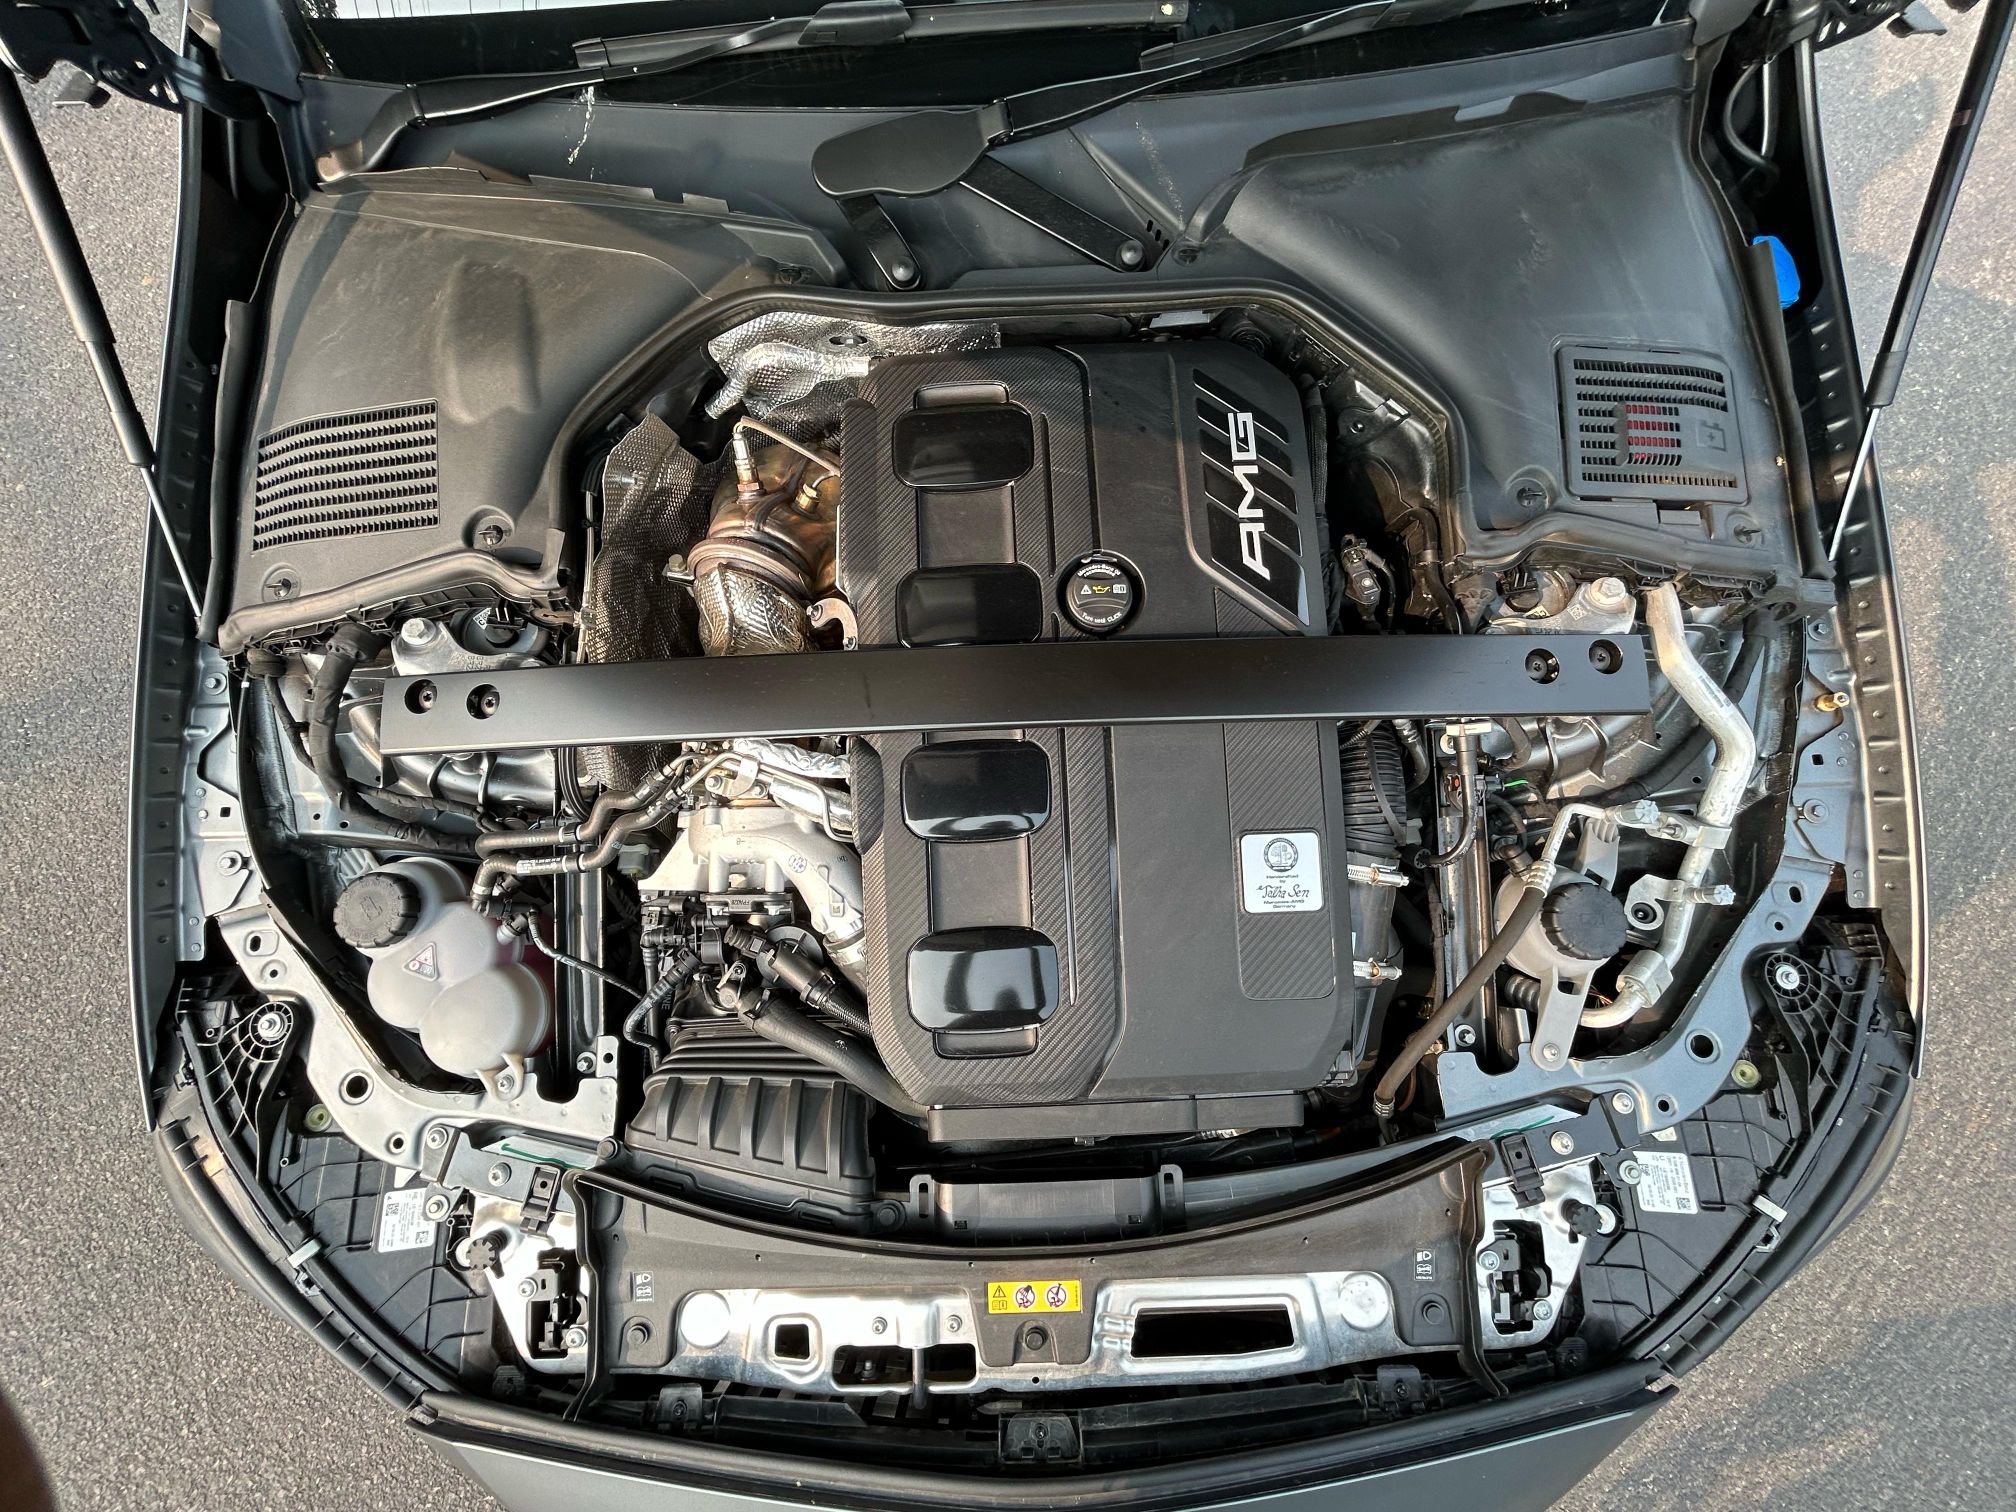 Mercedes-AMG C43 Review: नई मर्सडीज-एएमजी सी43 इलेक्ट्रिक सेडान कार की वो 5 खासियत, जो आपको पता होनी चाहिए!